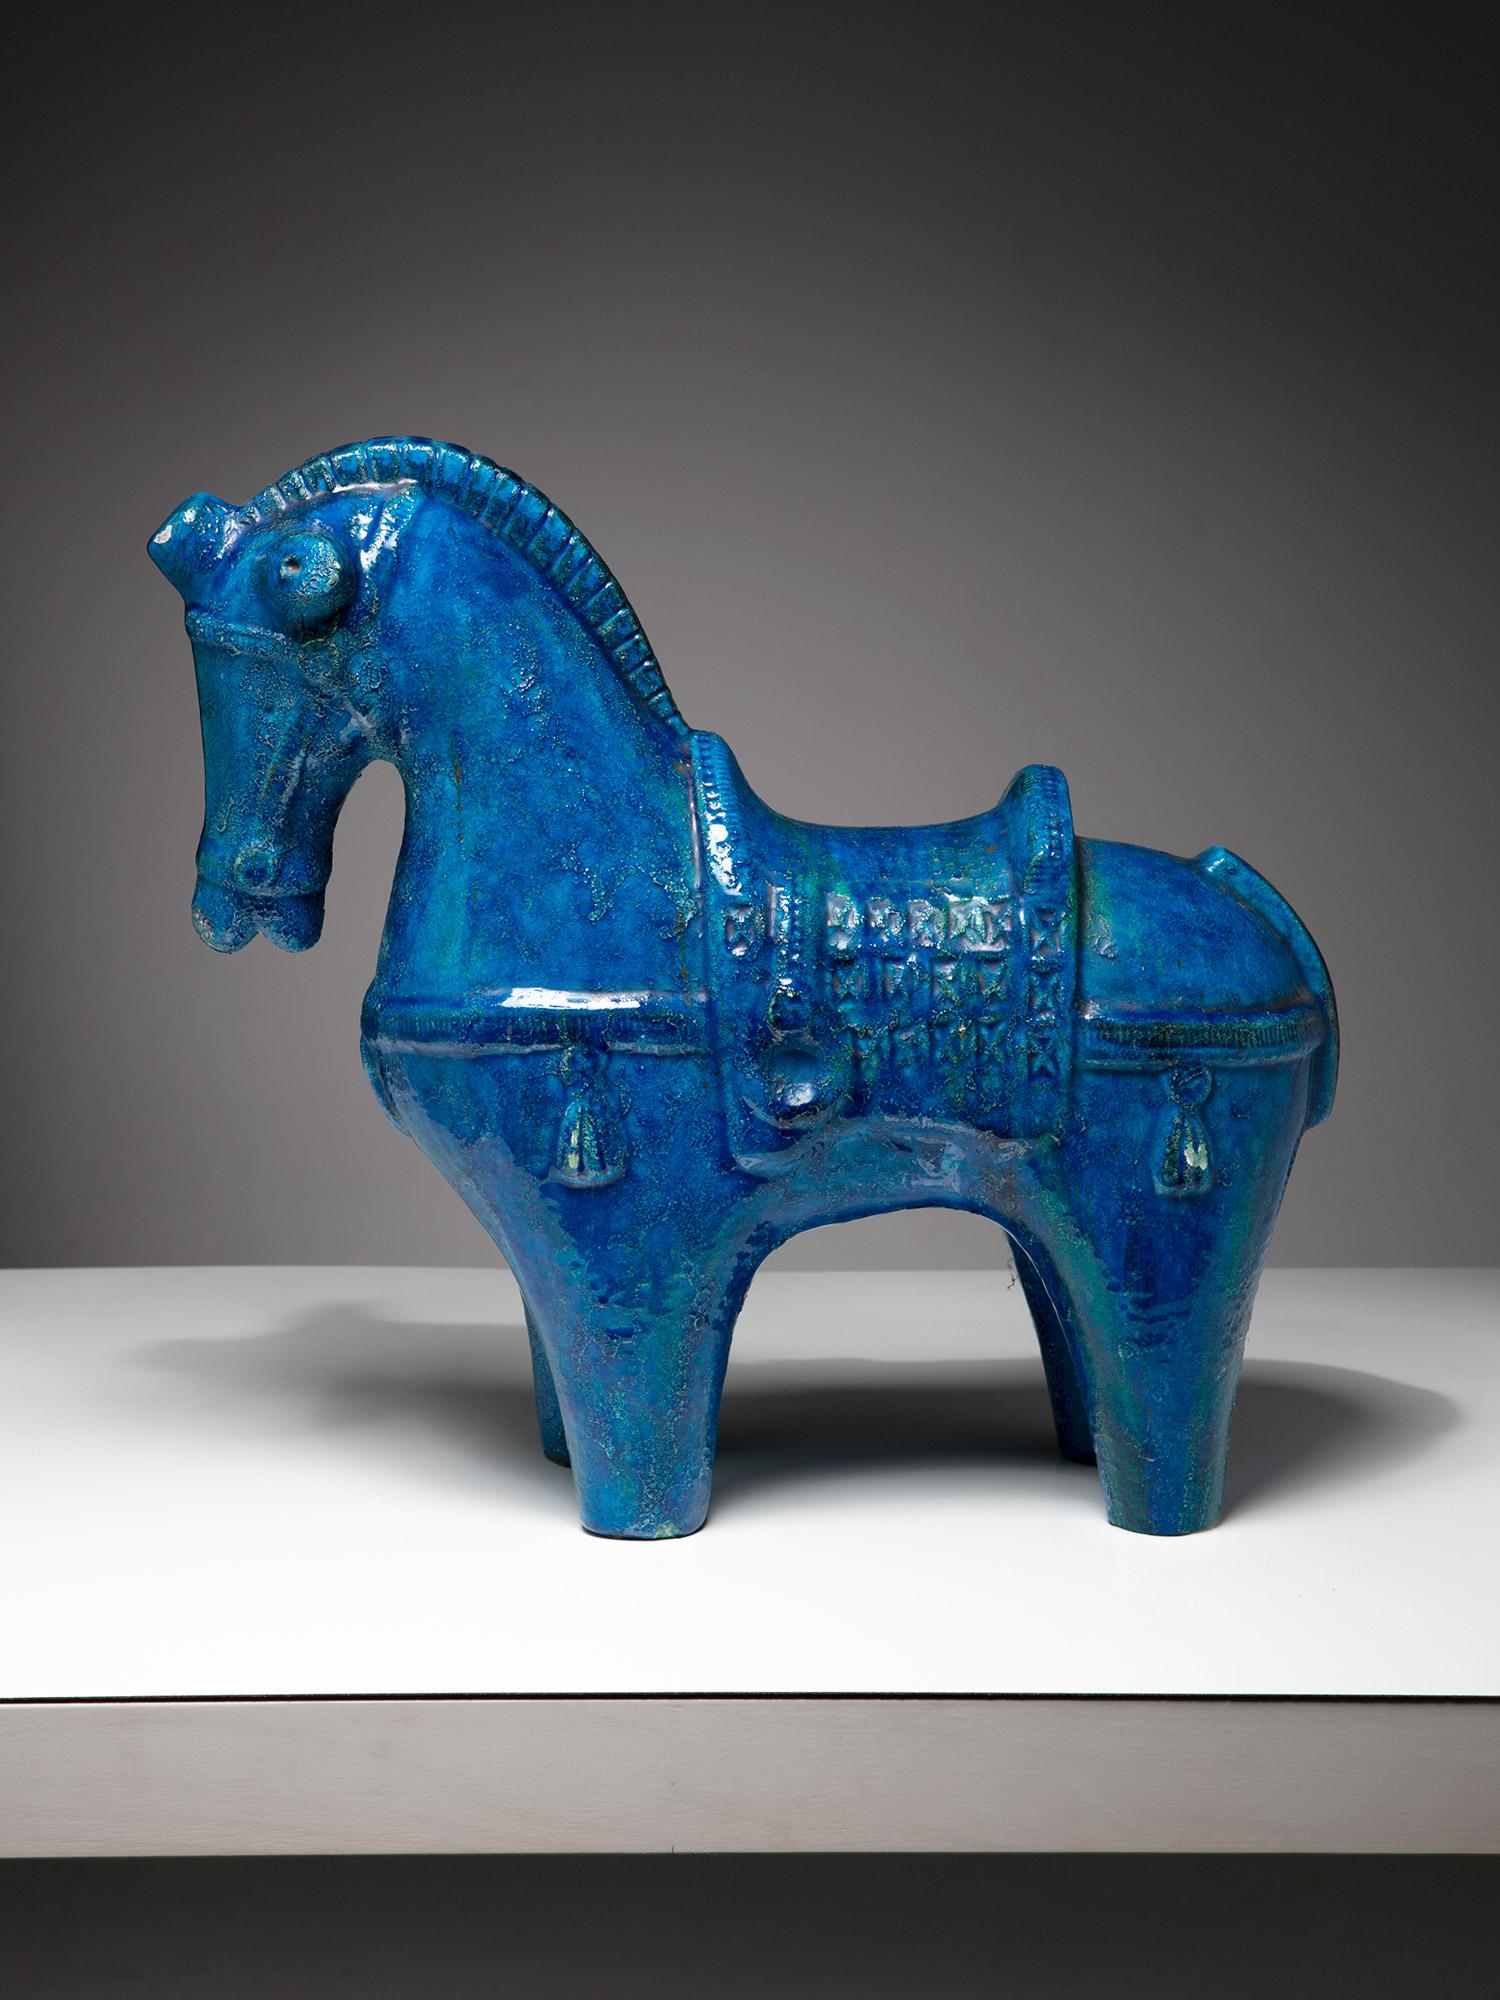 Stehende Pferdeskulptur aus Keramik von Aldo Londi für Bitossi.
Blaue kristalline Glasur, die die Details des Dekors hervorhebt.
